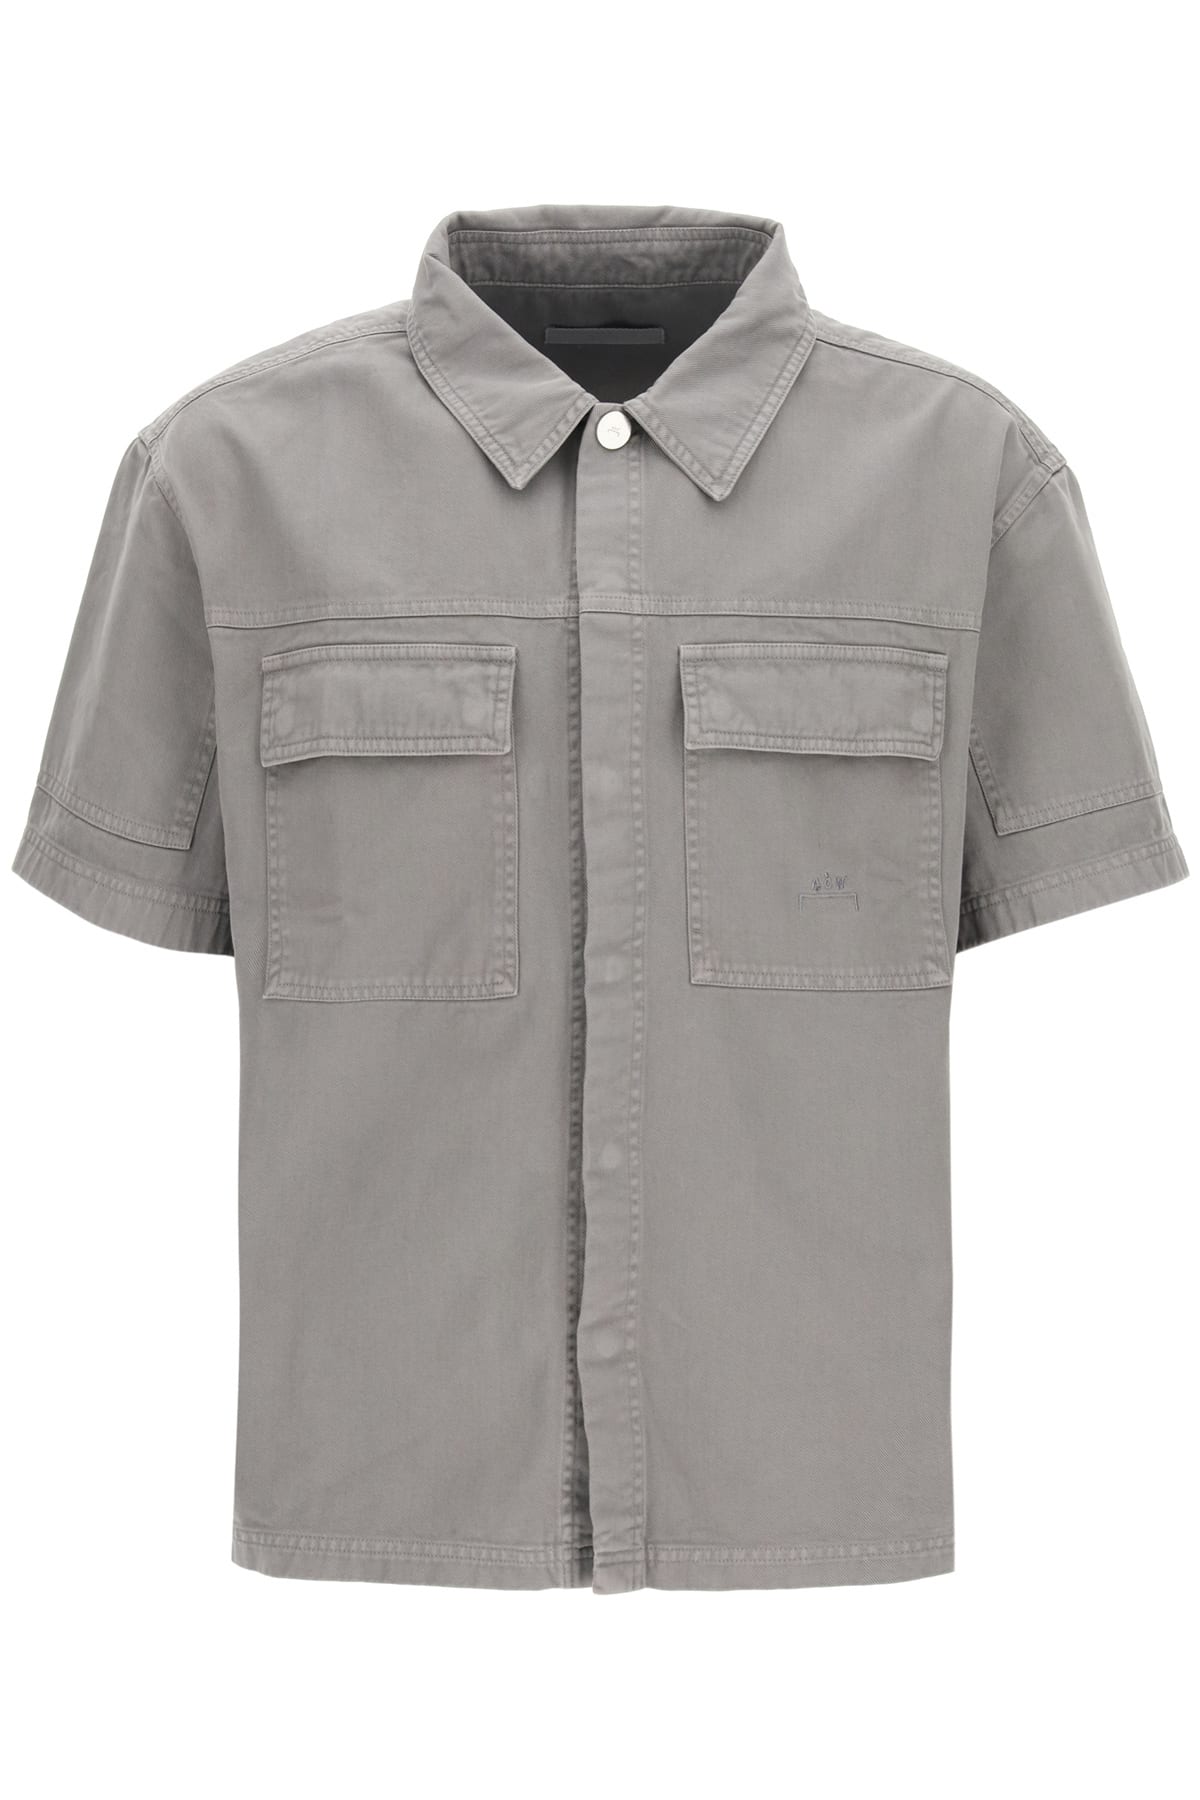 A-COLD-WALL Short Sleeve Denim Shirt